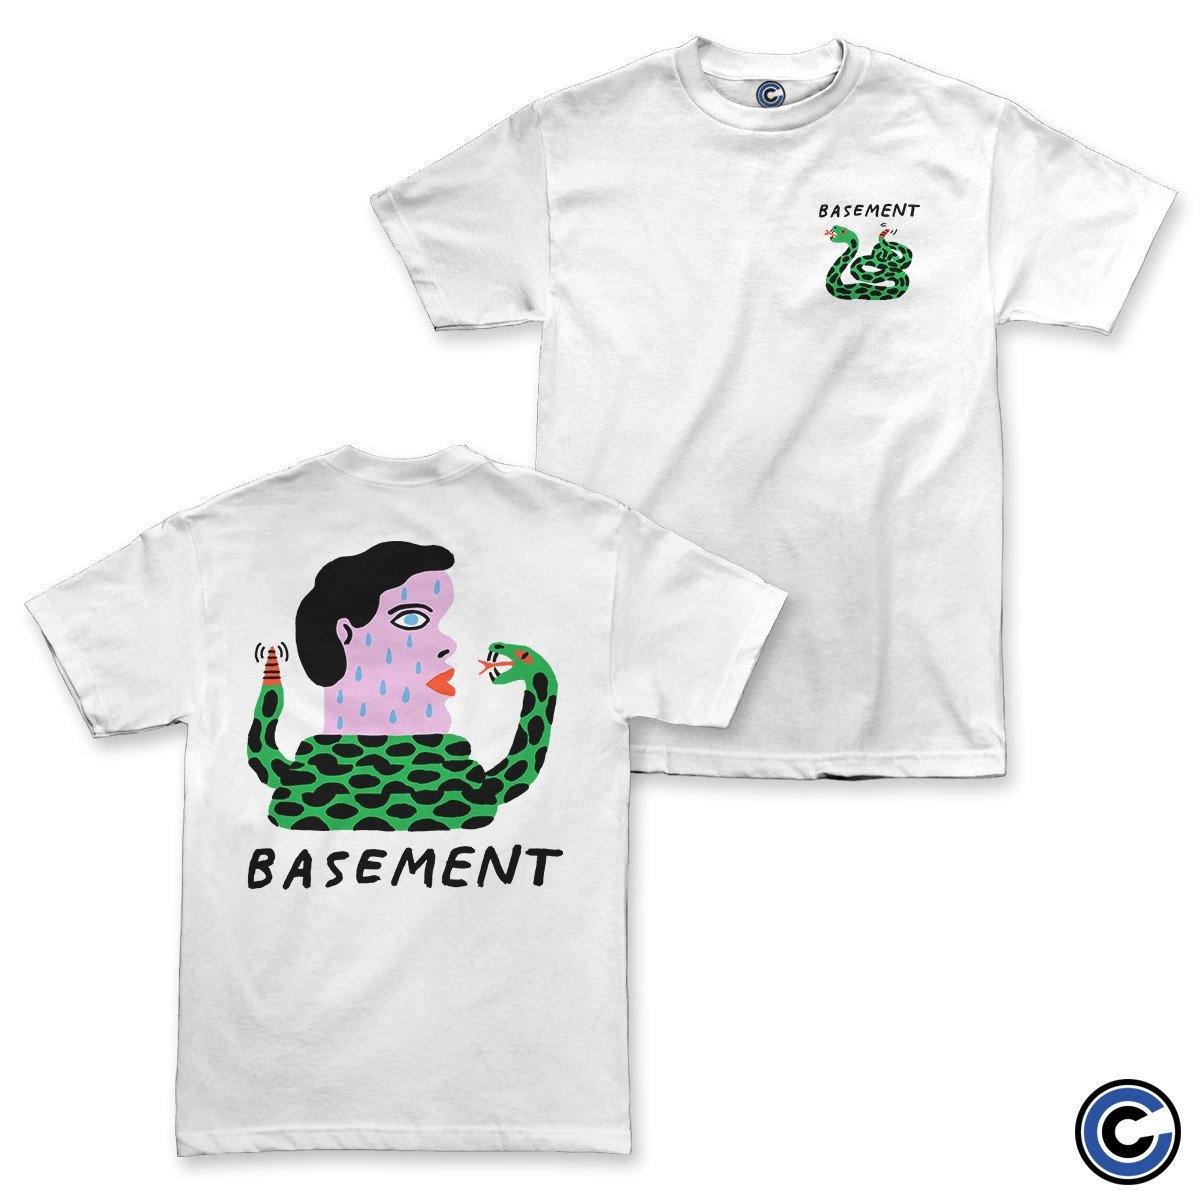 Buy – Basement "Snake" Shirt – Band & Music Merch – Cold Cuts Merch